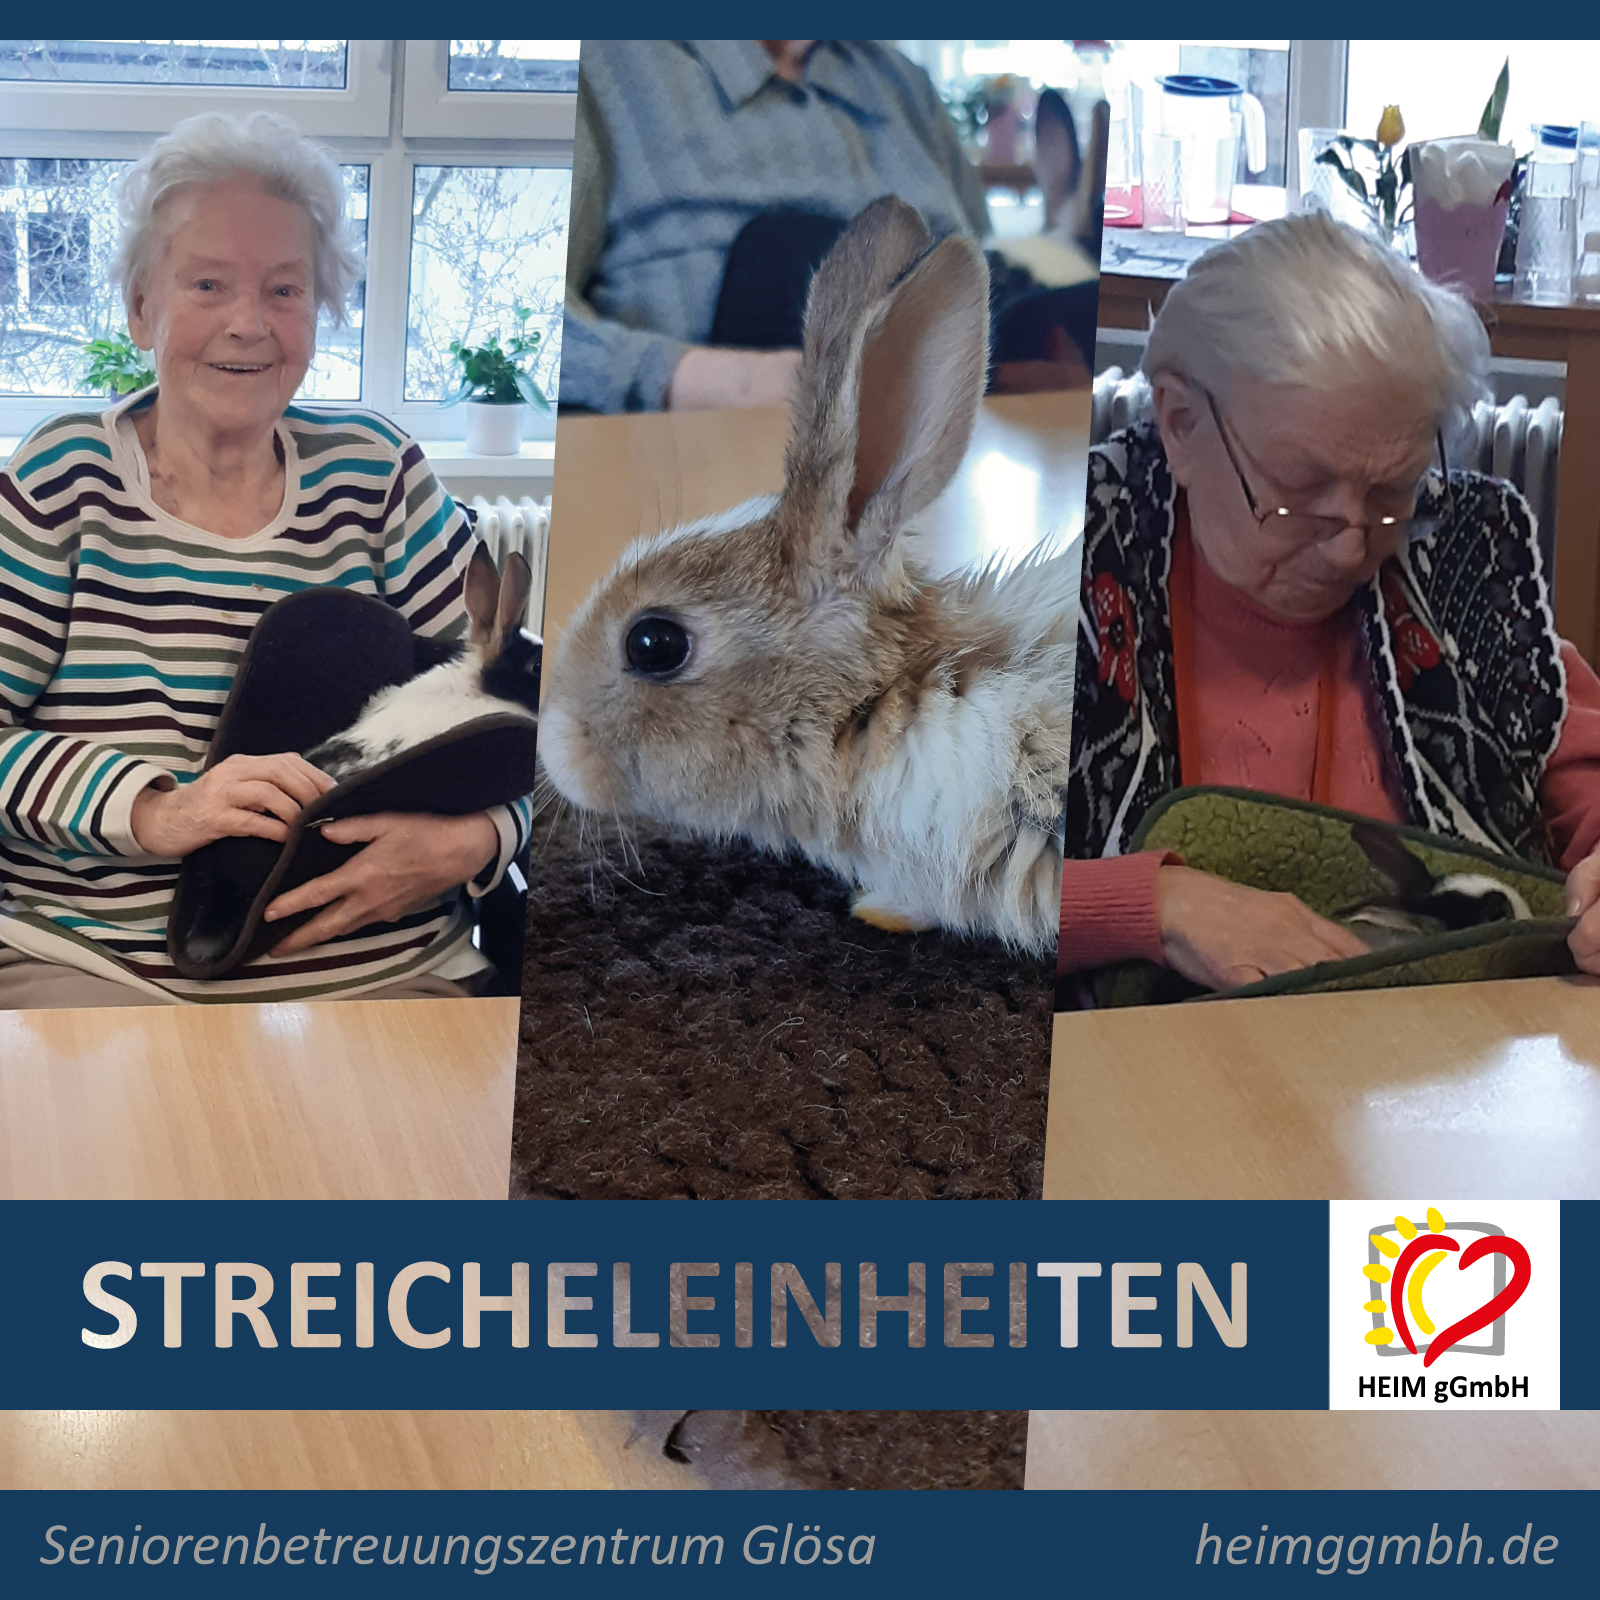 Hasenbesuch mit Streicheleinheiten im Seniorenbetreuungszentrum Glösa der HEIM gemeinnützigen GmbH in Chemnitz